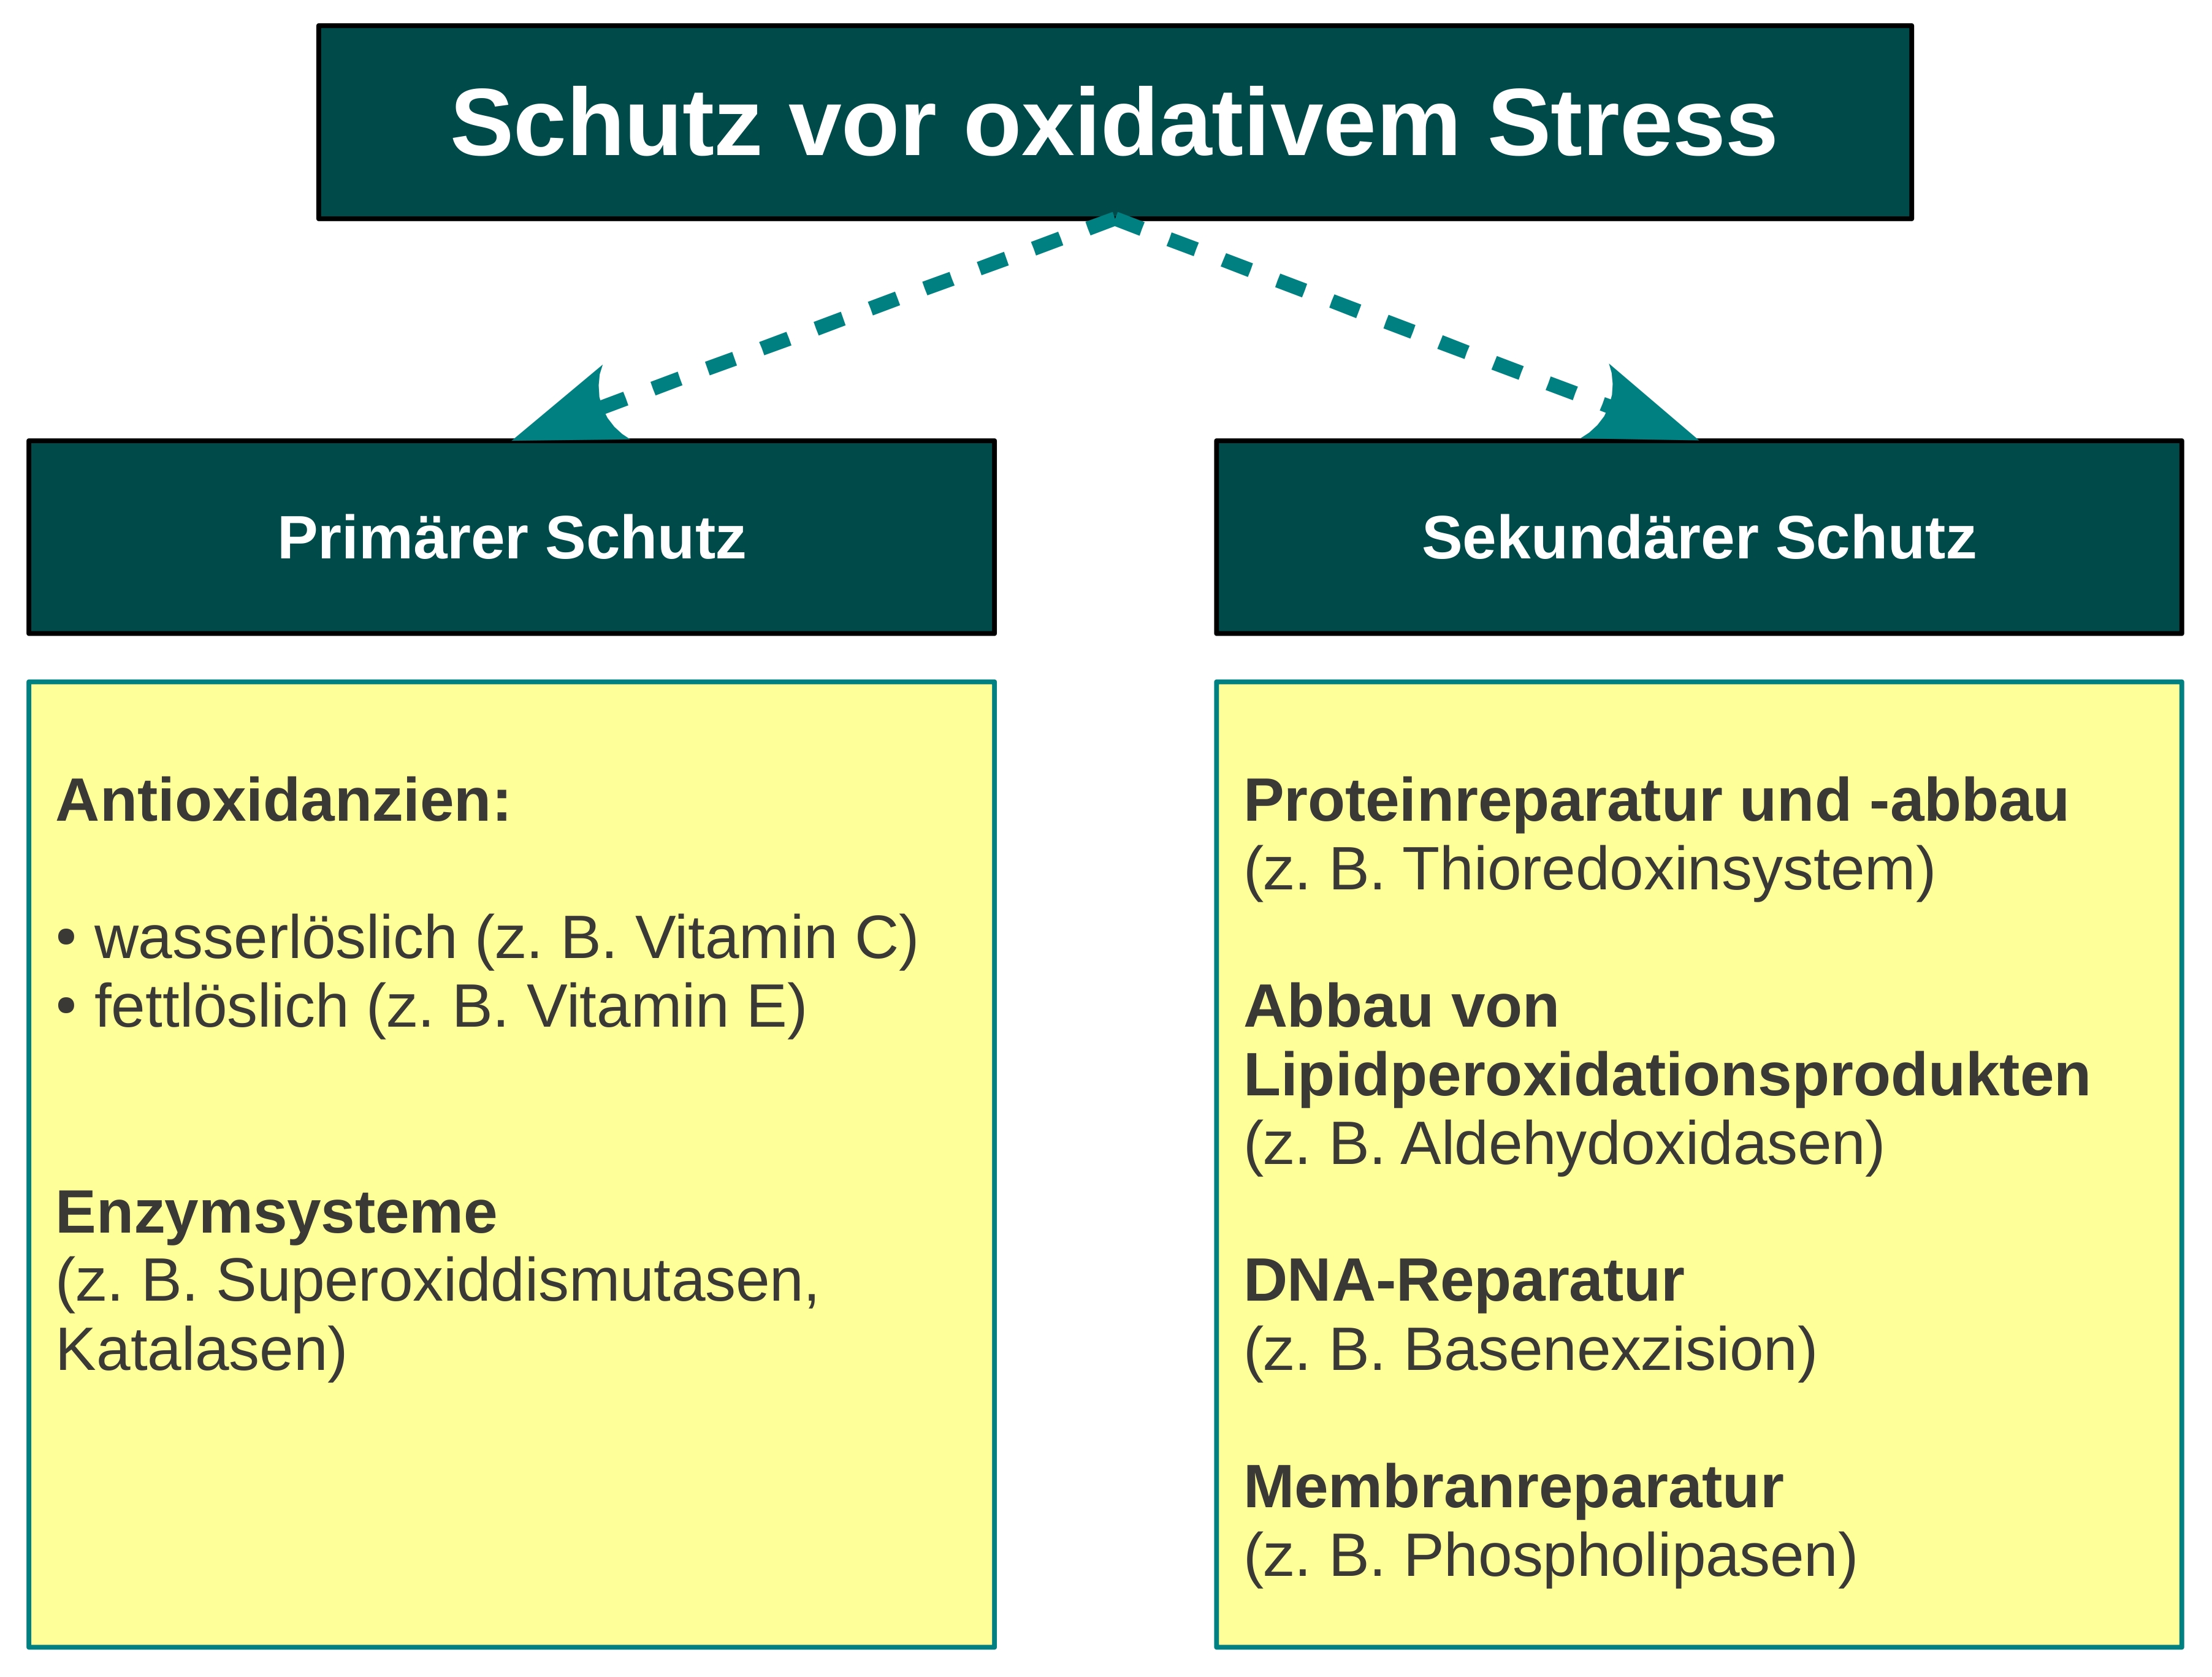 diese-abbildung-zeigt-was-vor-oxidativem-stress-schuetzt